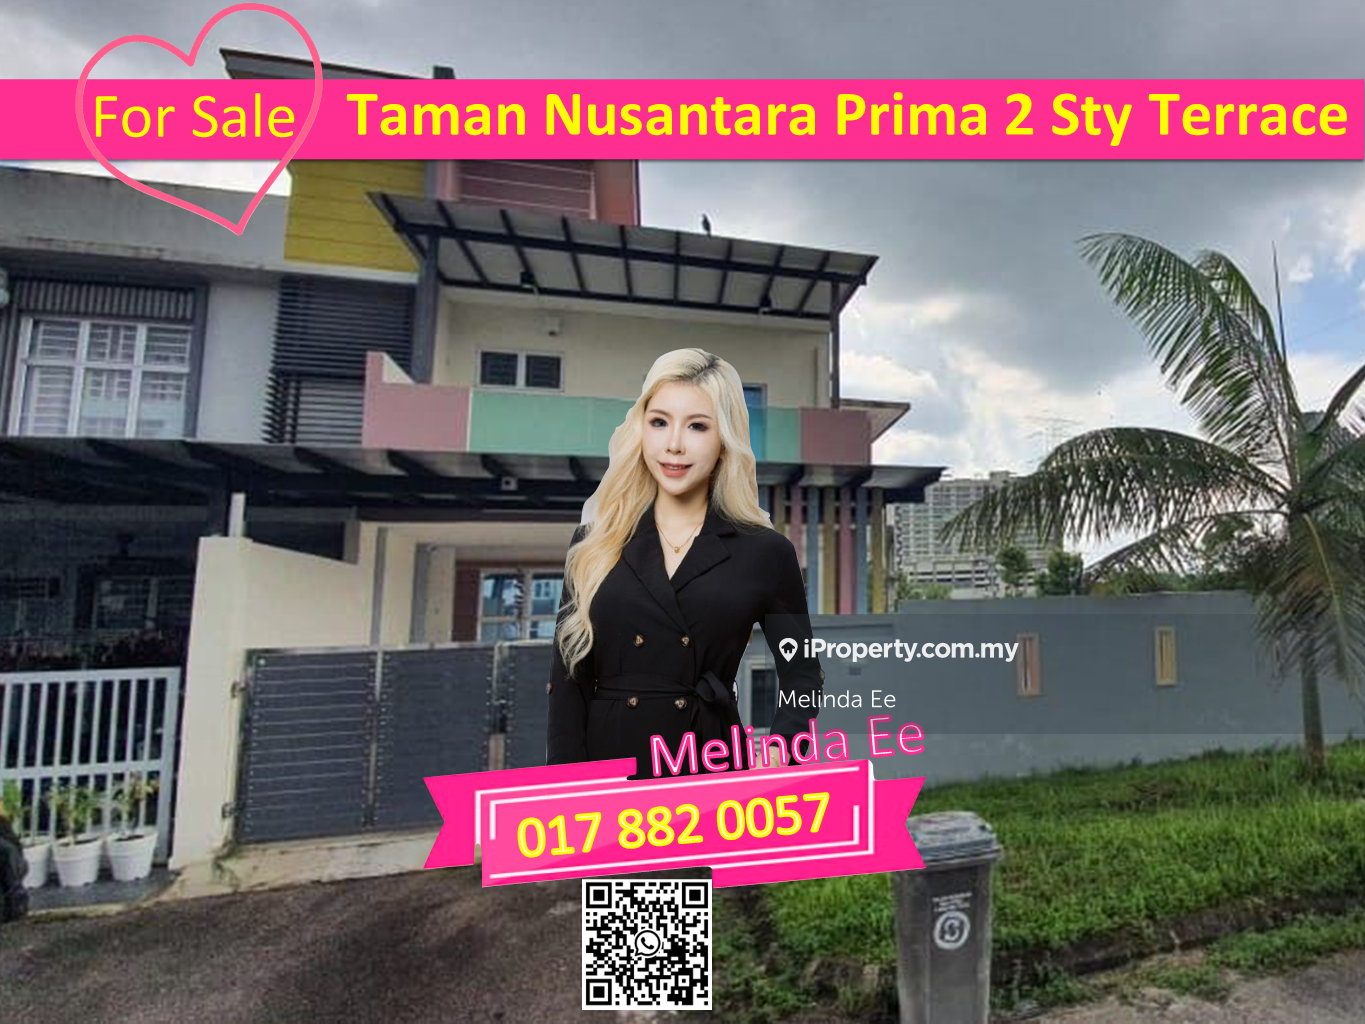 Taman Nusantara Prima Renovated 2 Storey Terrace Corner Lot 4bed